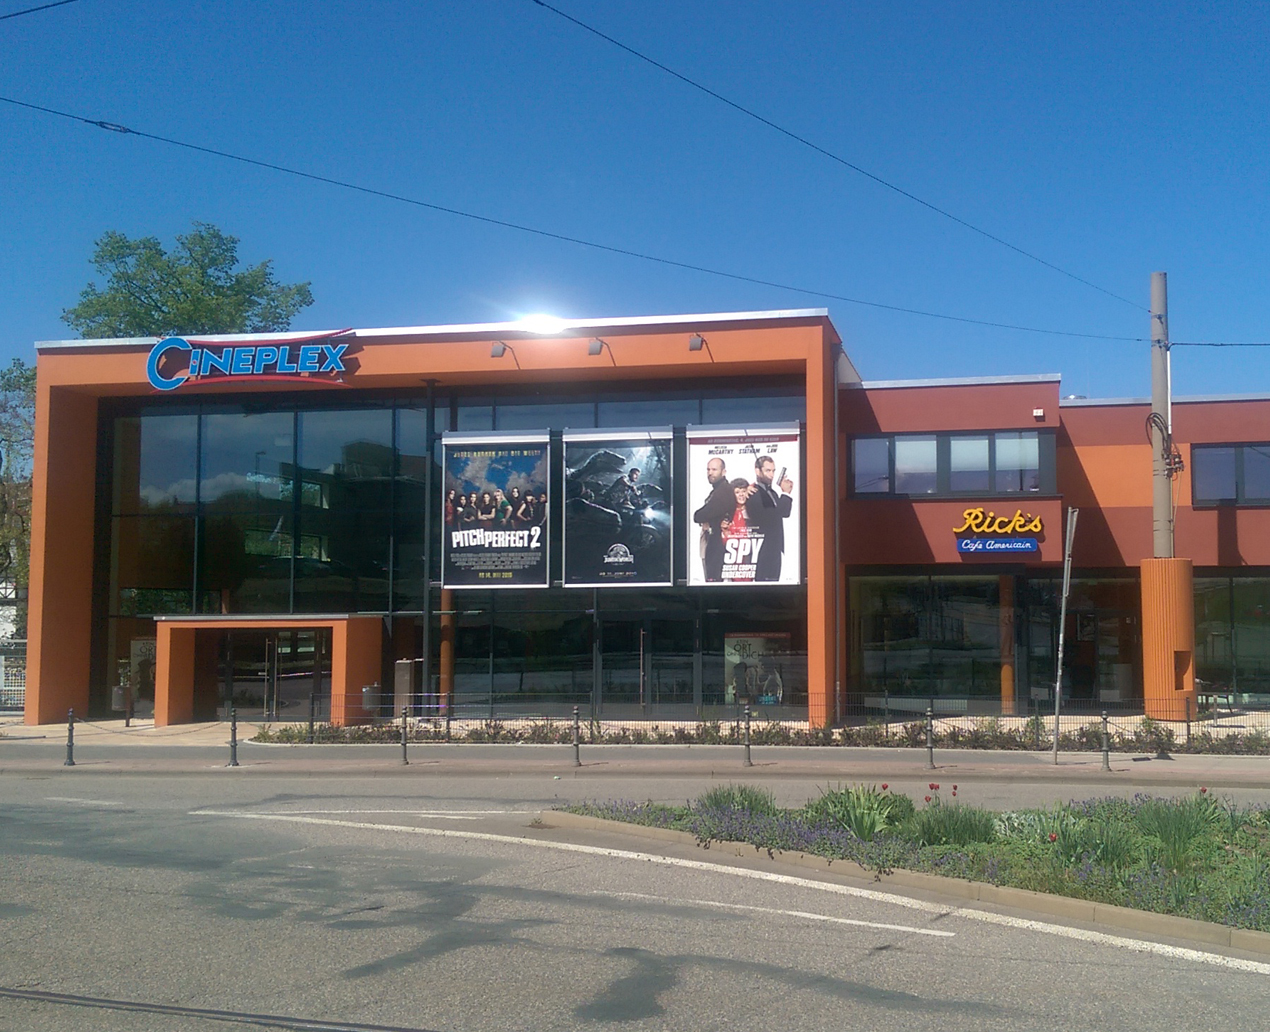 Cineplex Kino Gotha ©wikimedia commons/Elmar Nolte